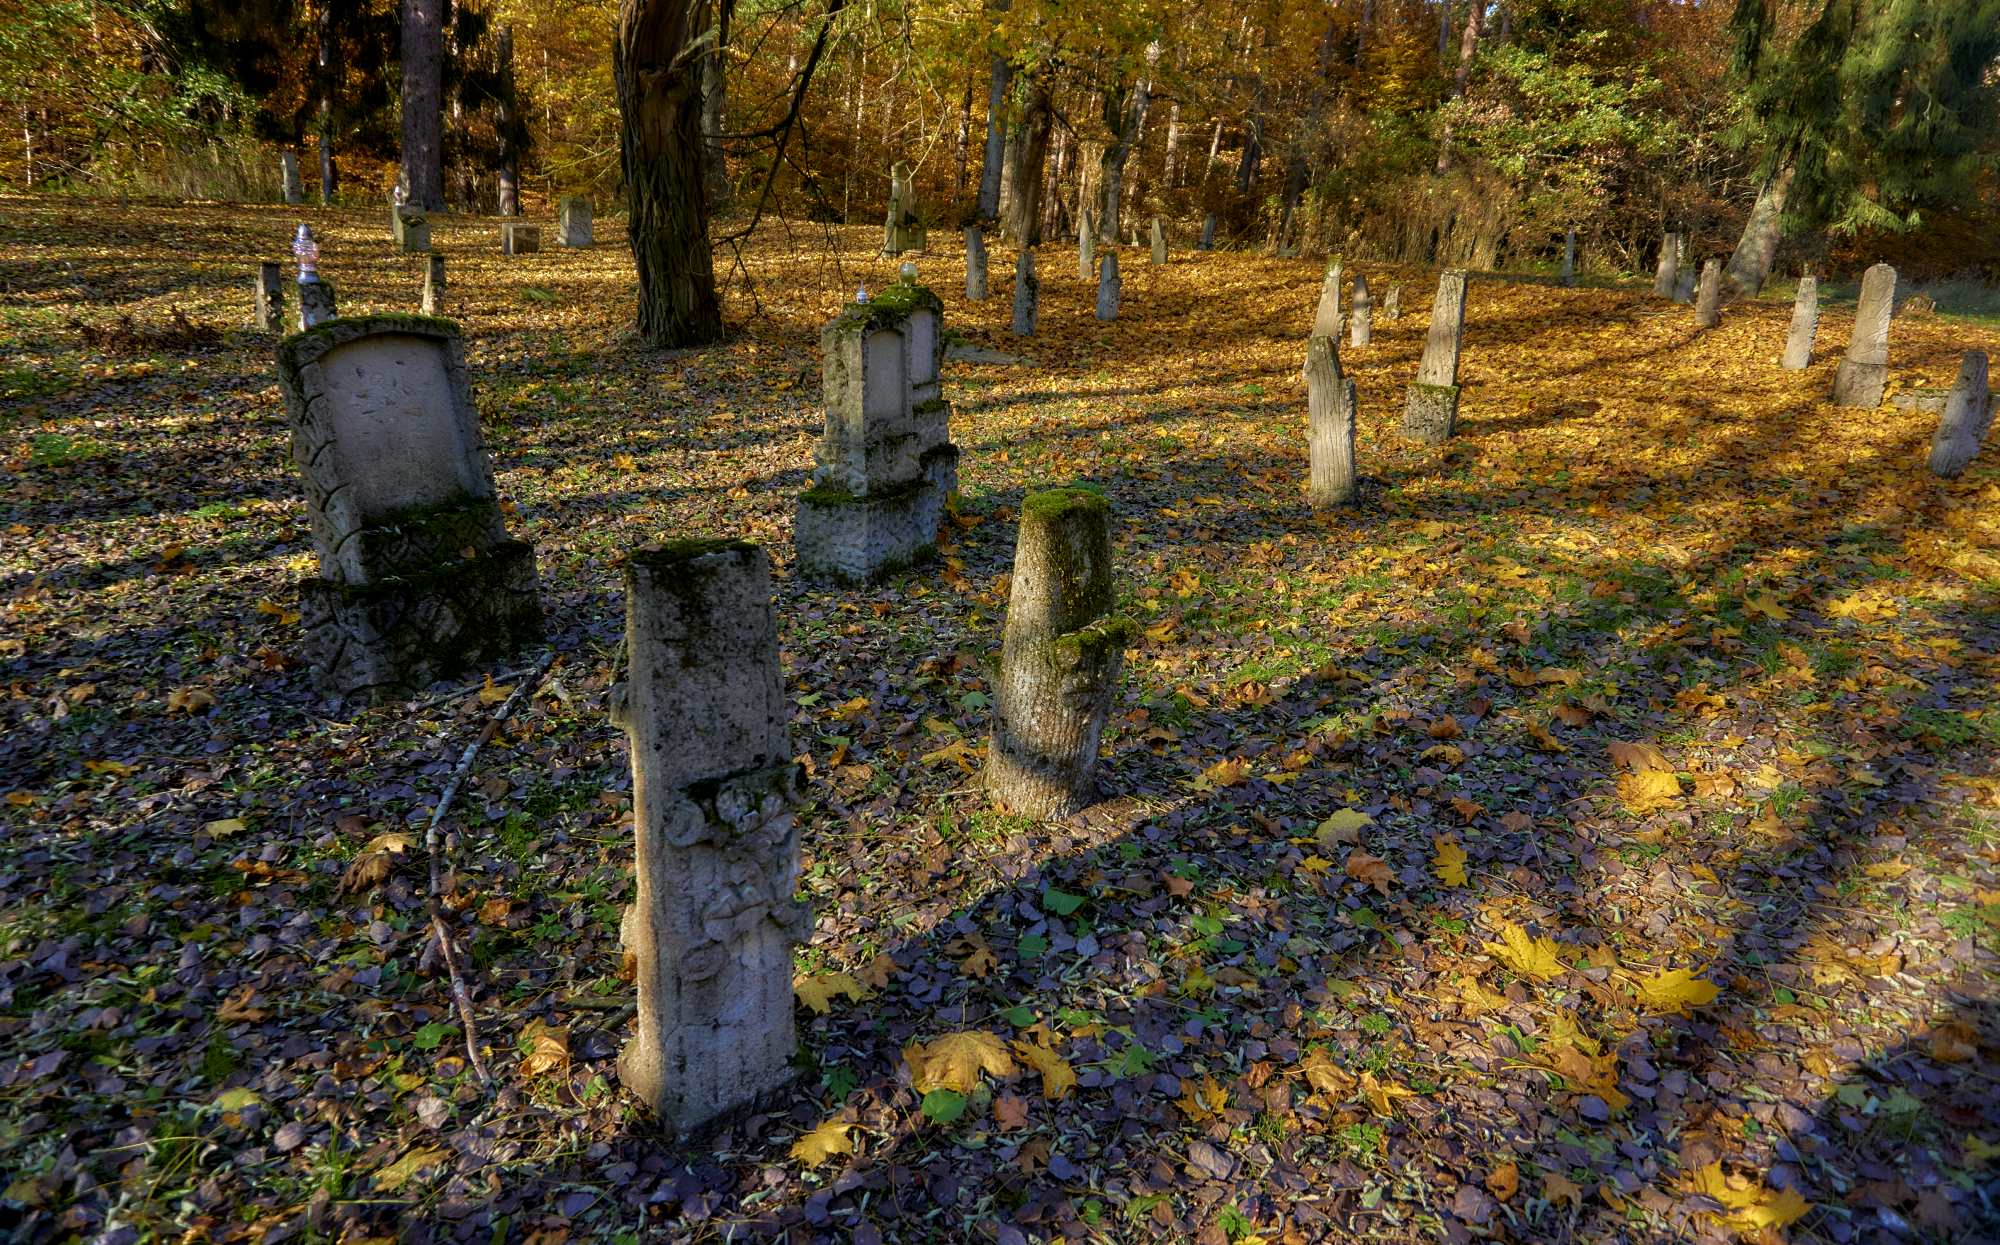 Springe stary cmentarz ewangelicki zagubiony w lesie